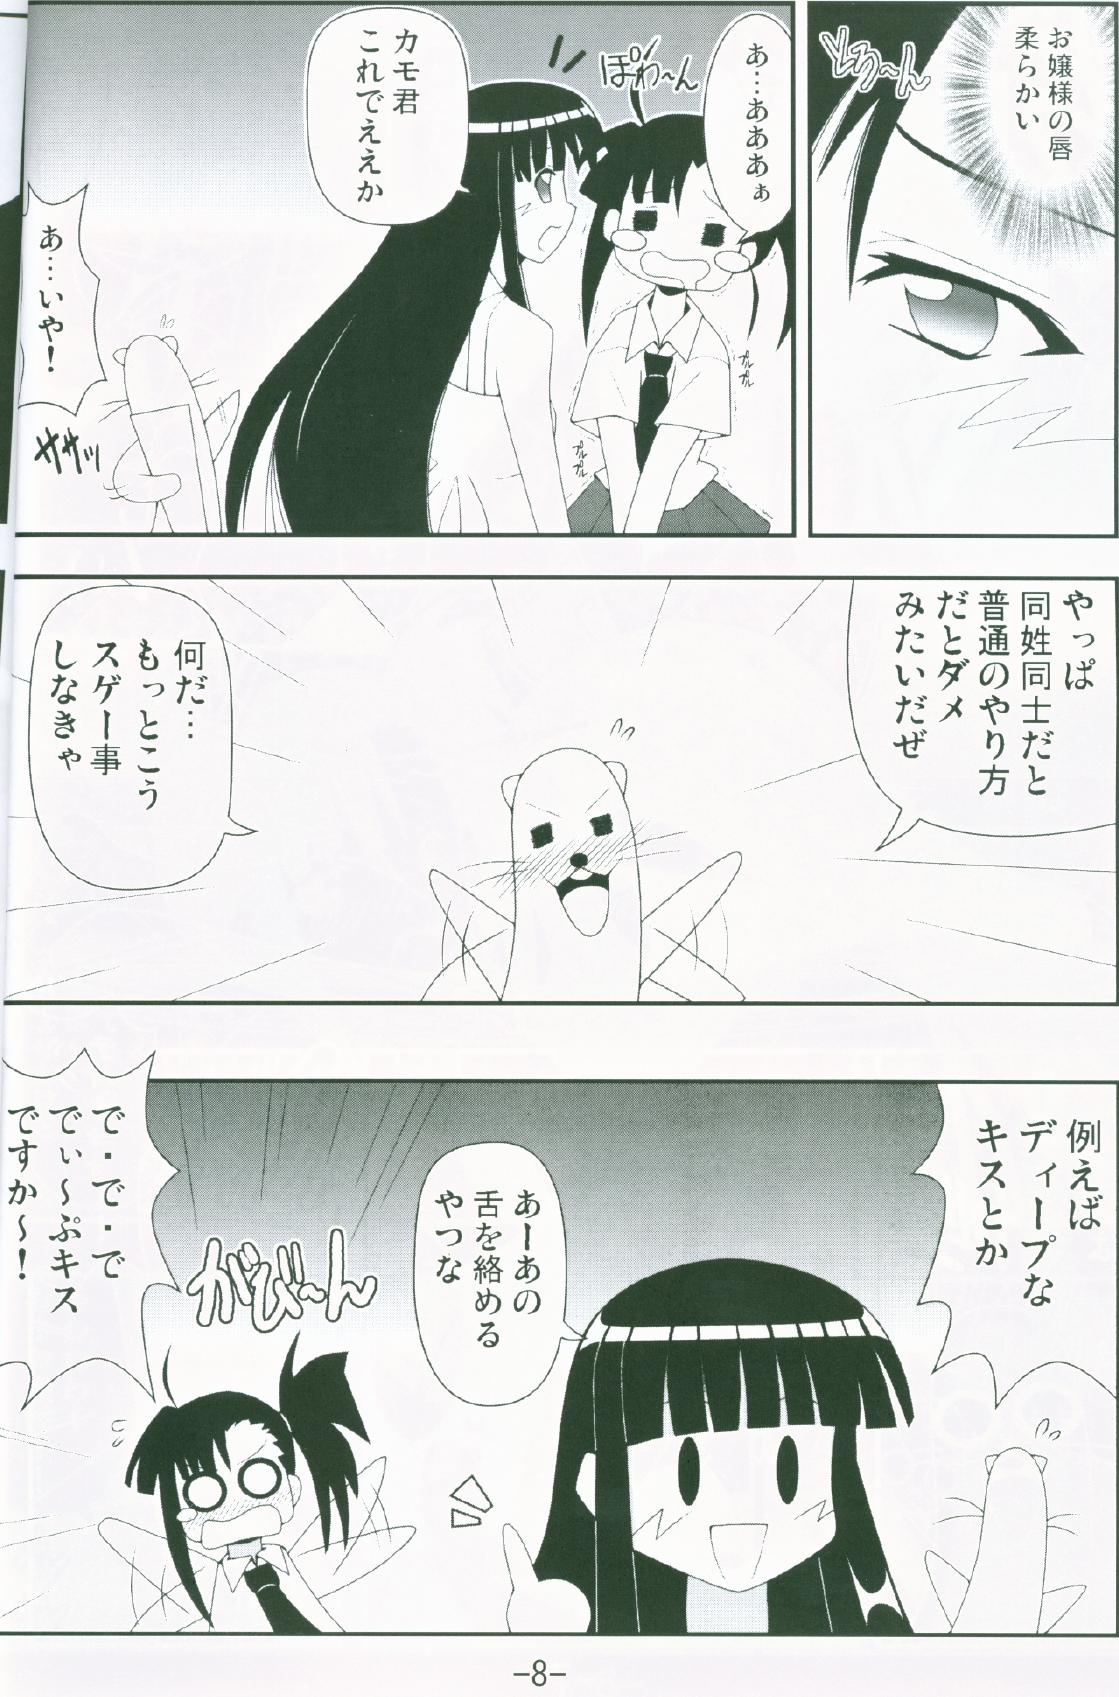 Facefuck Gurimaga ~ Yamato Shiko - Mahou sensei negima Cuzinho - Page 6